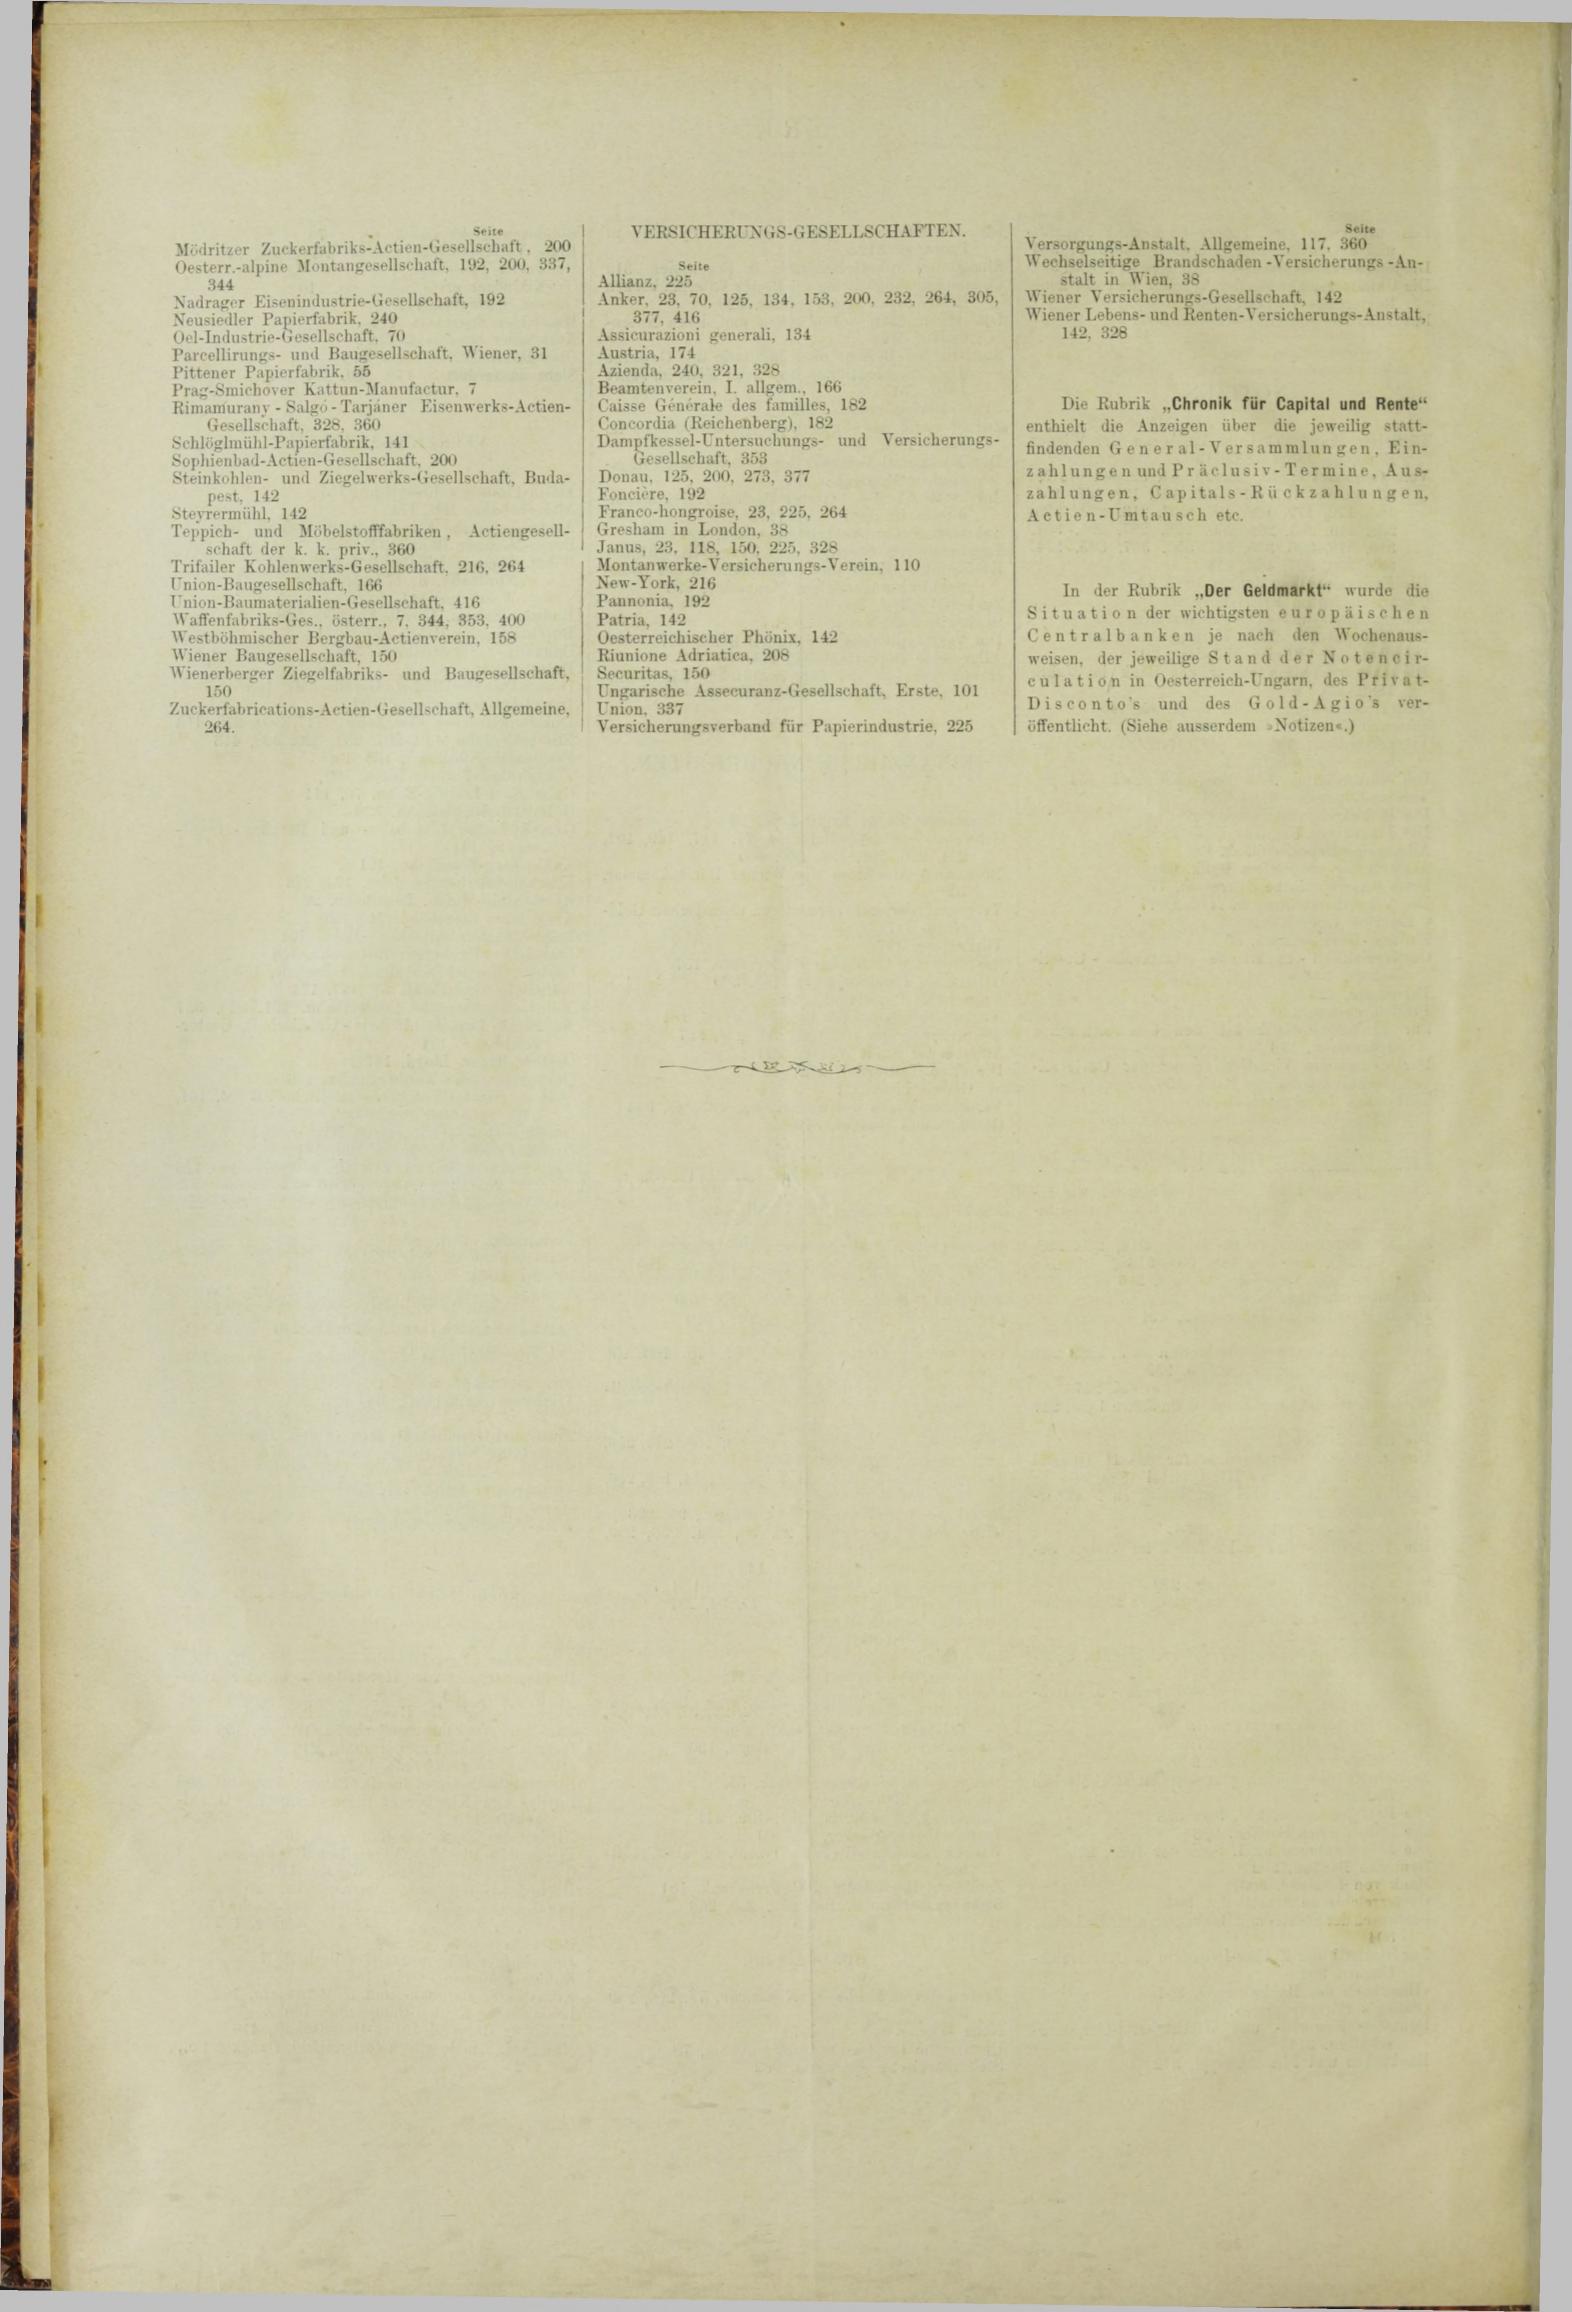 Der Tresor 13.09.1883 - Seite 12